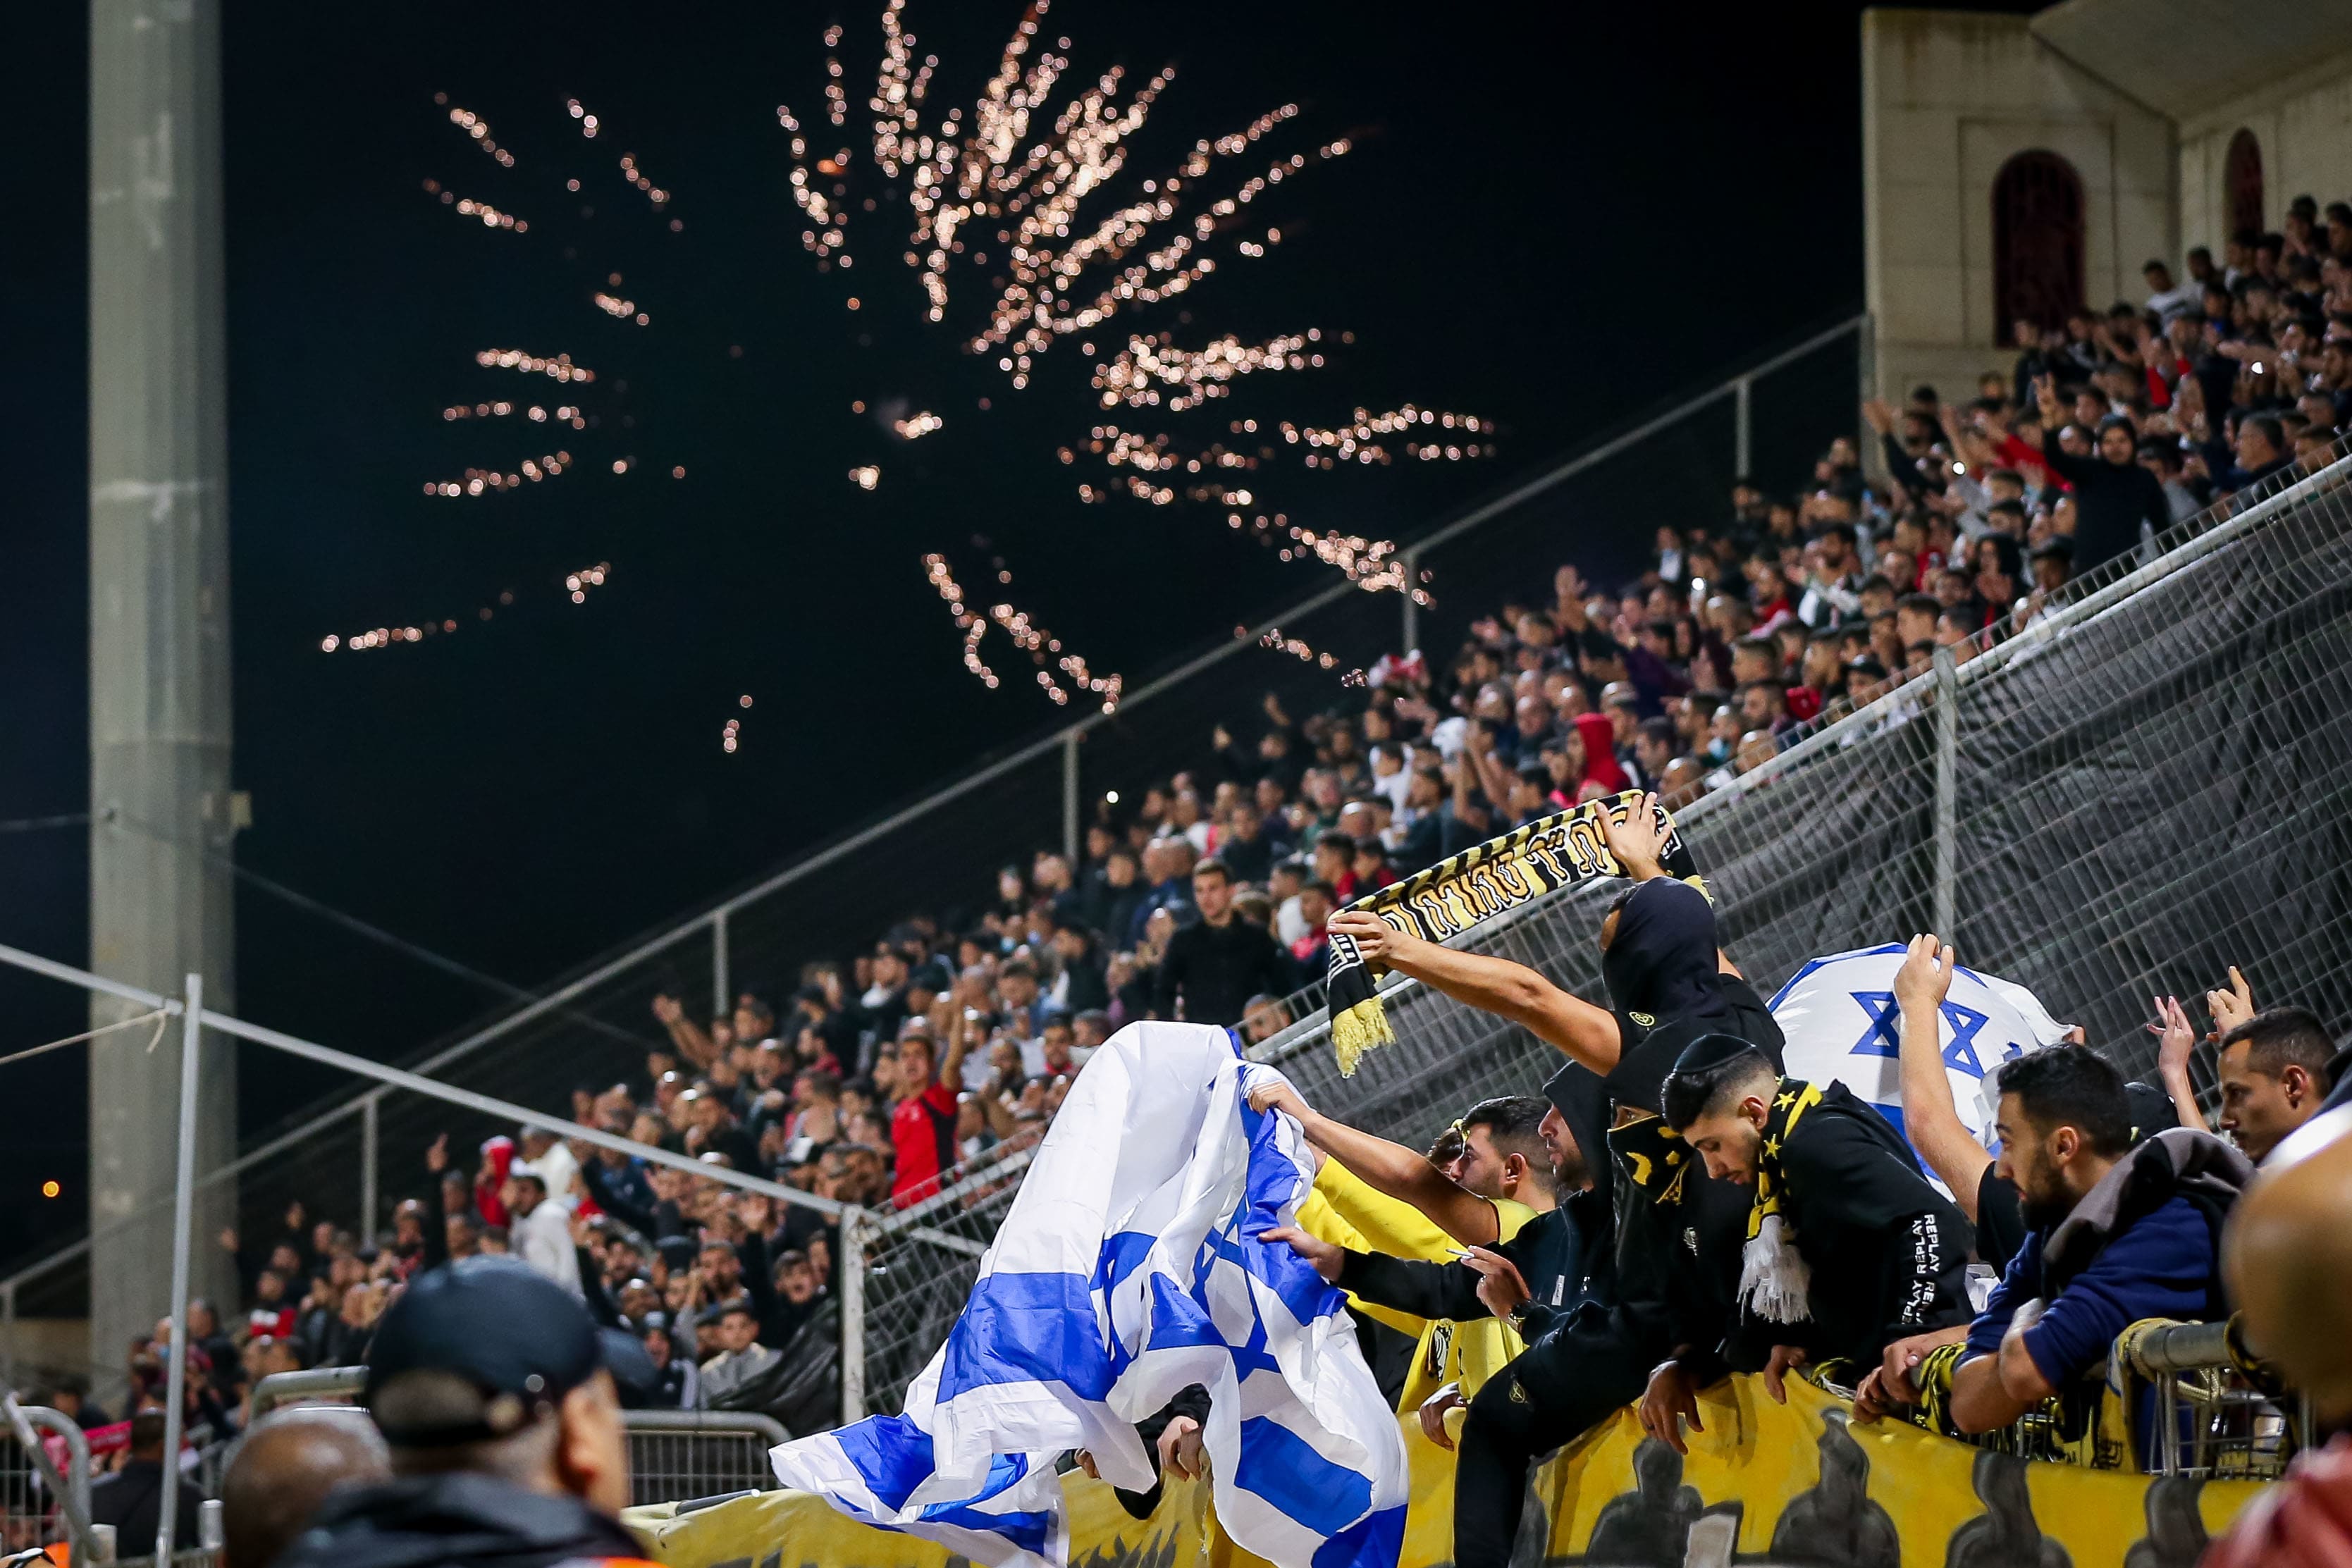 אוהדי בני סכנין חוגגים, אוהדי בית"ר ירושלים מנופפים בדגל ישראל